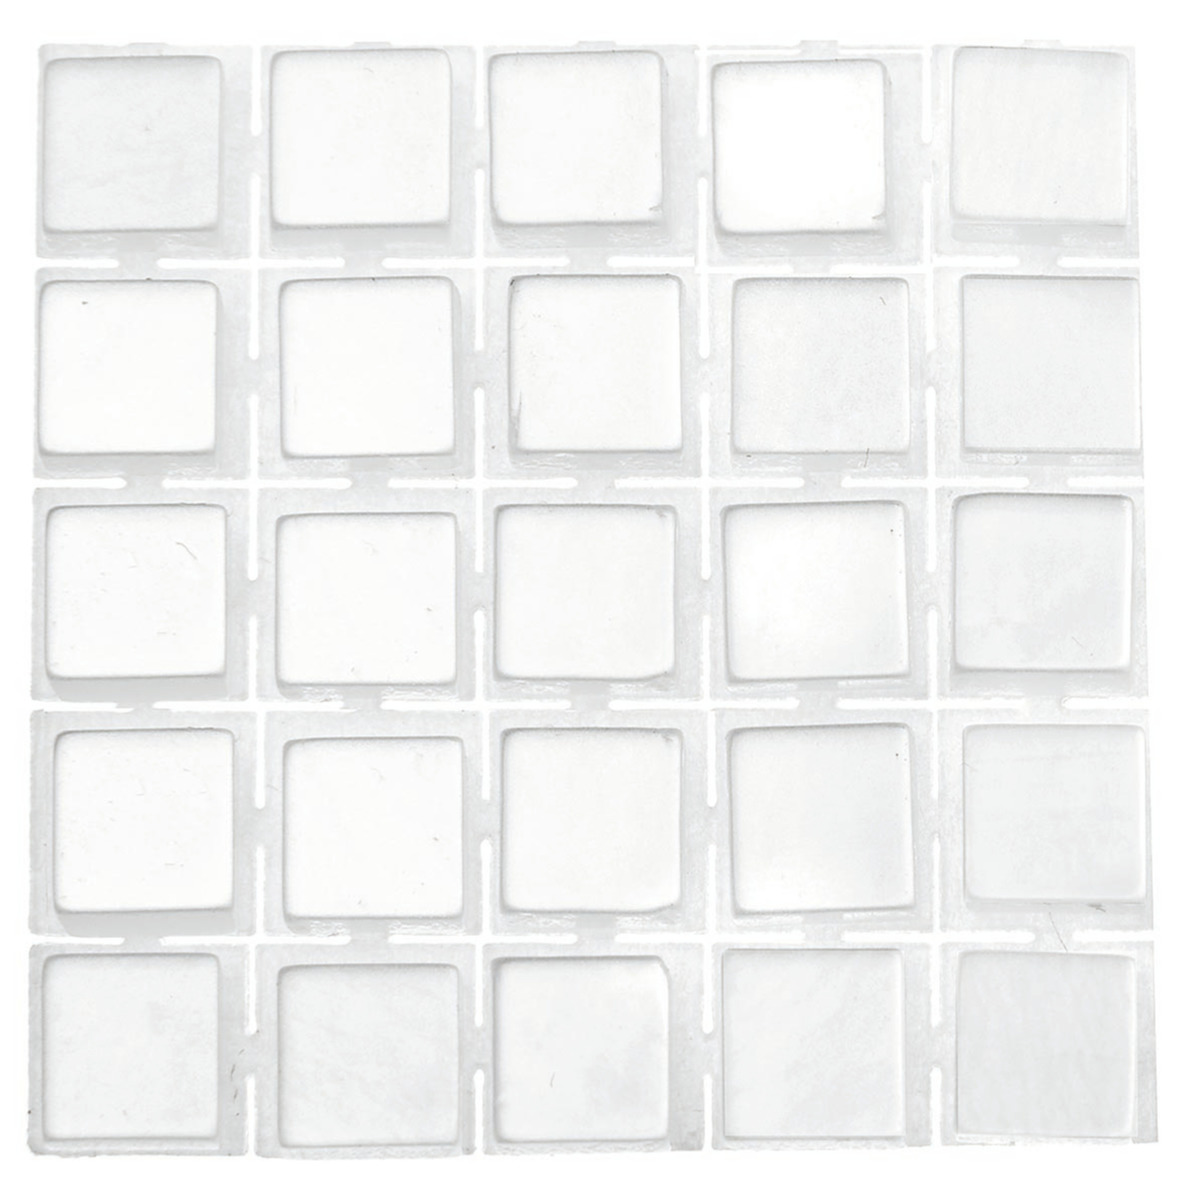 595x stuks mozaieken maken steentjes/tegels kleur wit 5 x 5 x 2 mm -